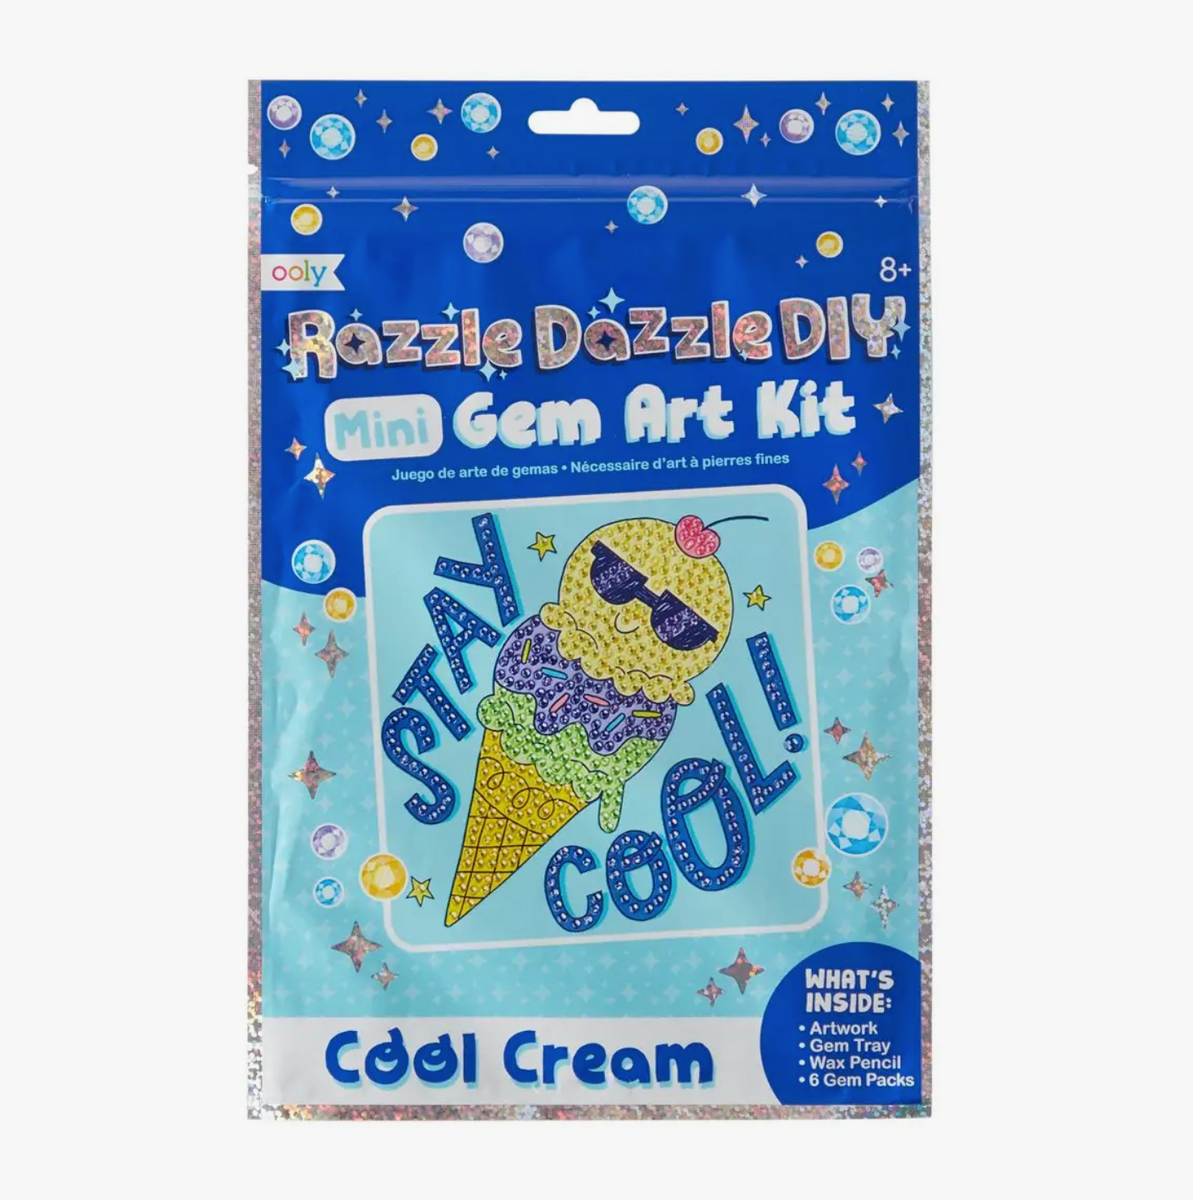 Ooly's Razzle Dazzle D.I.Y. Mini Gem Art Kit: Cool Cream